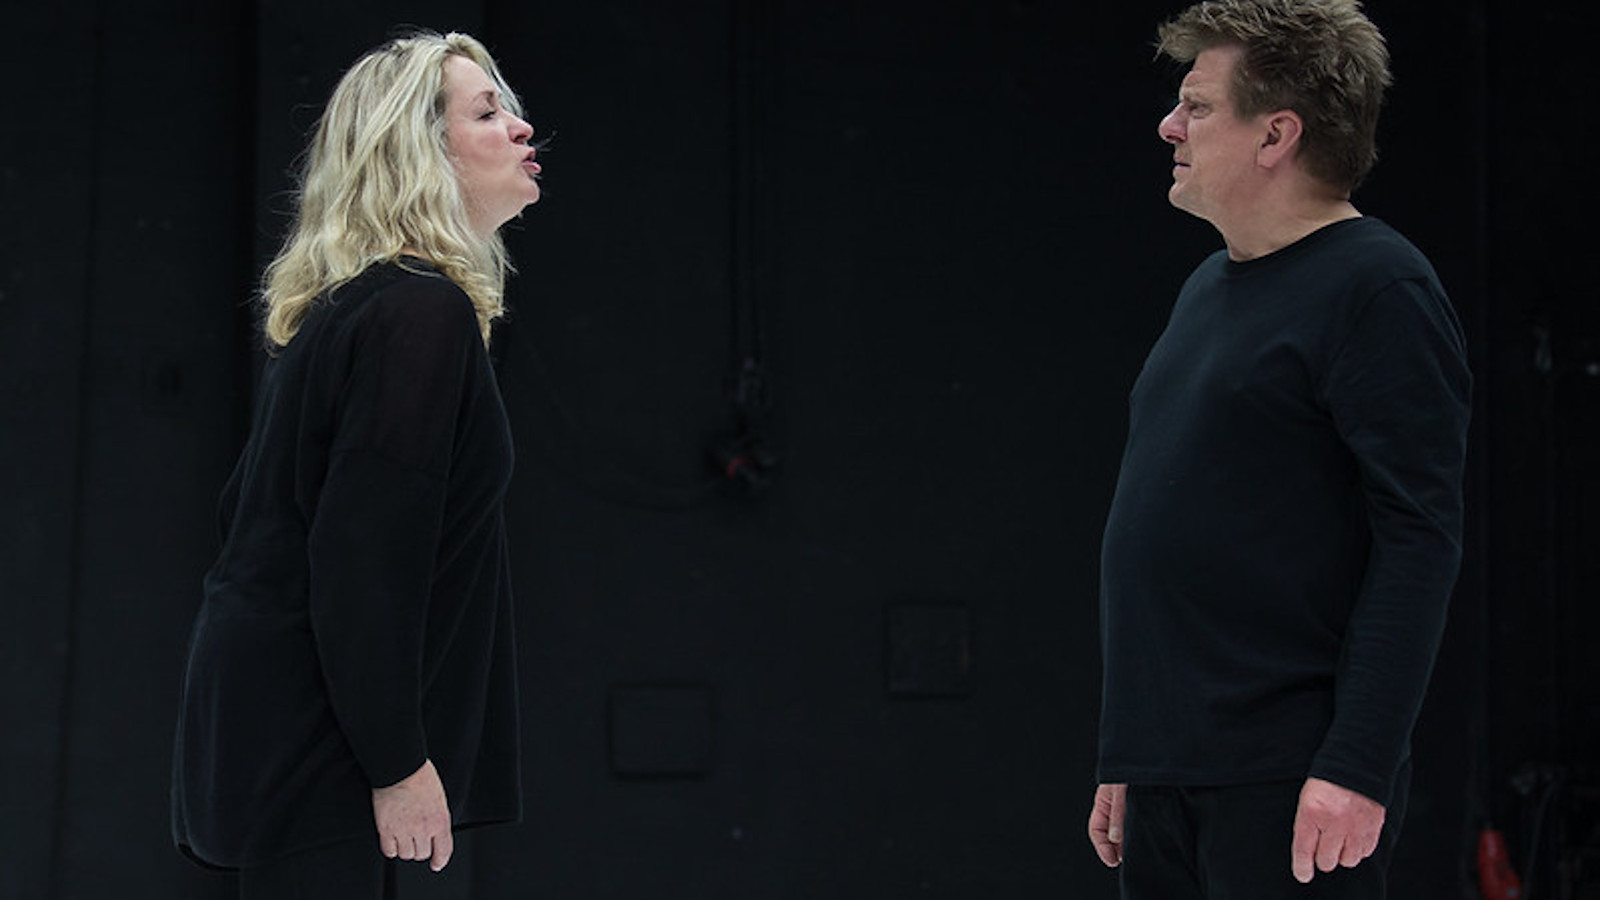 Kuvassa Katariina Kaitue ja Timo Torikka seisomassa vastakkain ja keskustelemassa vakavan näköisinä. Tausta on musta.